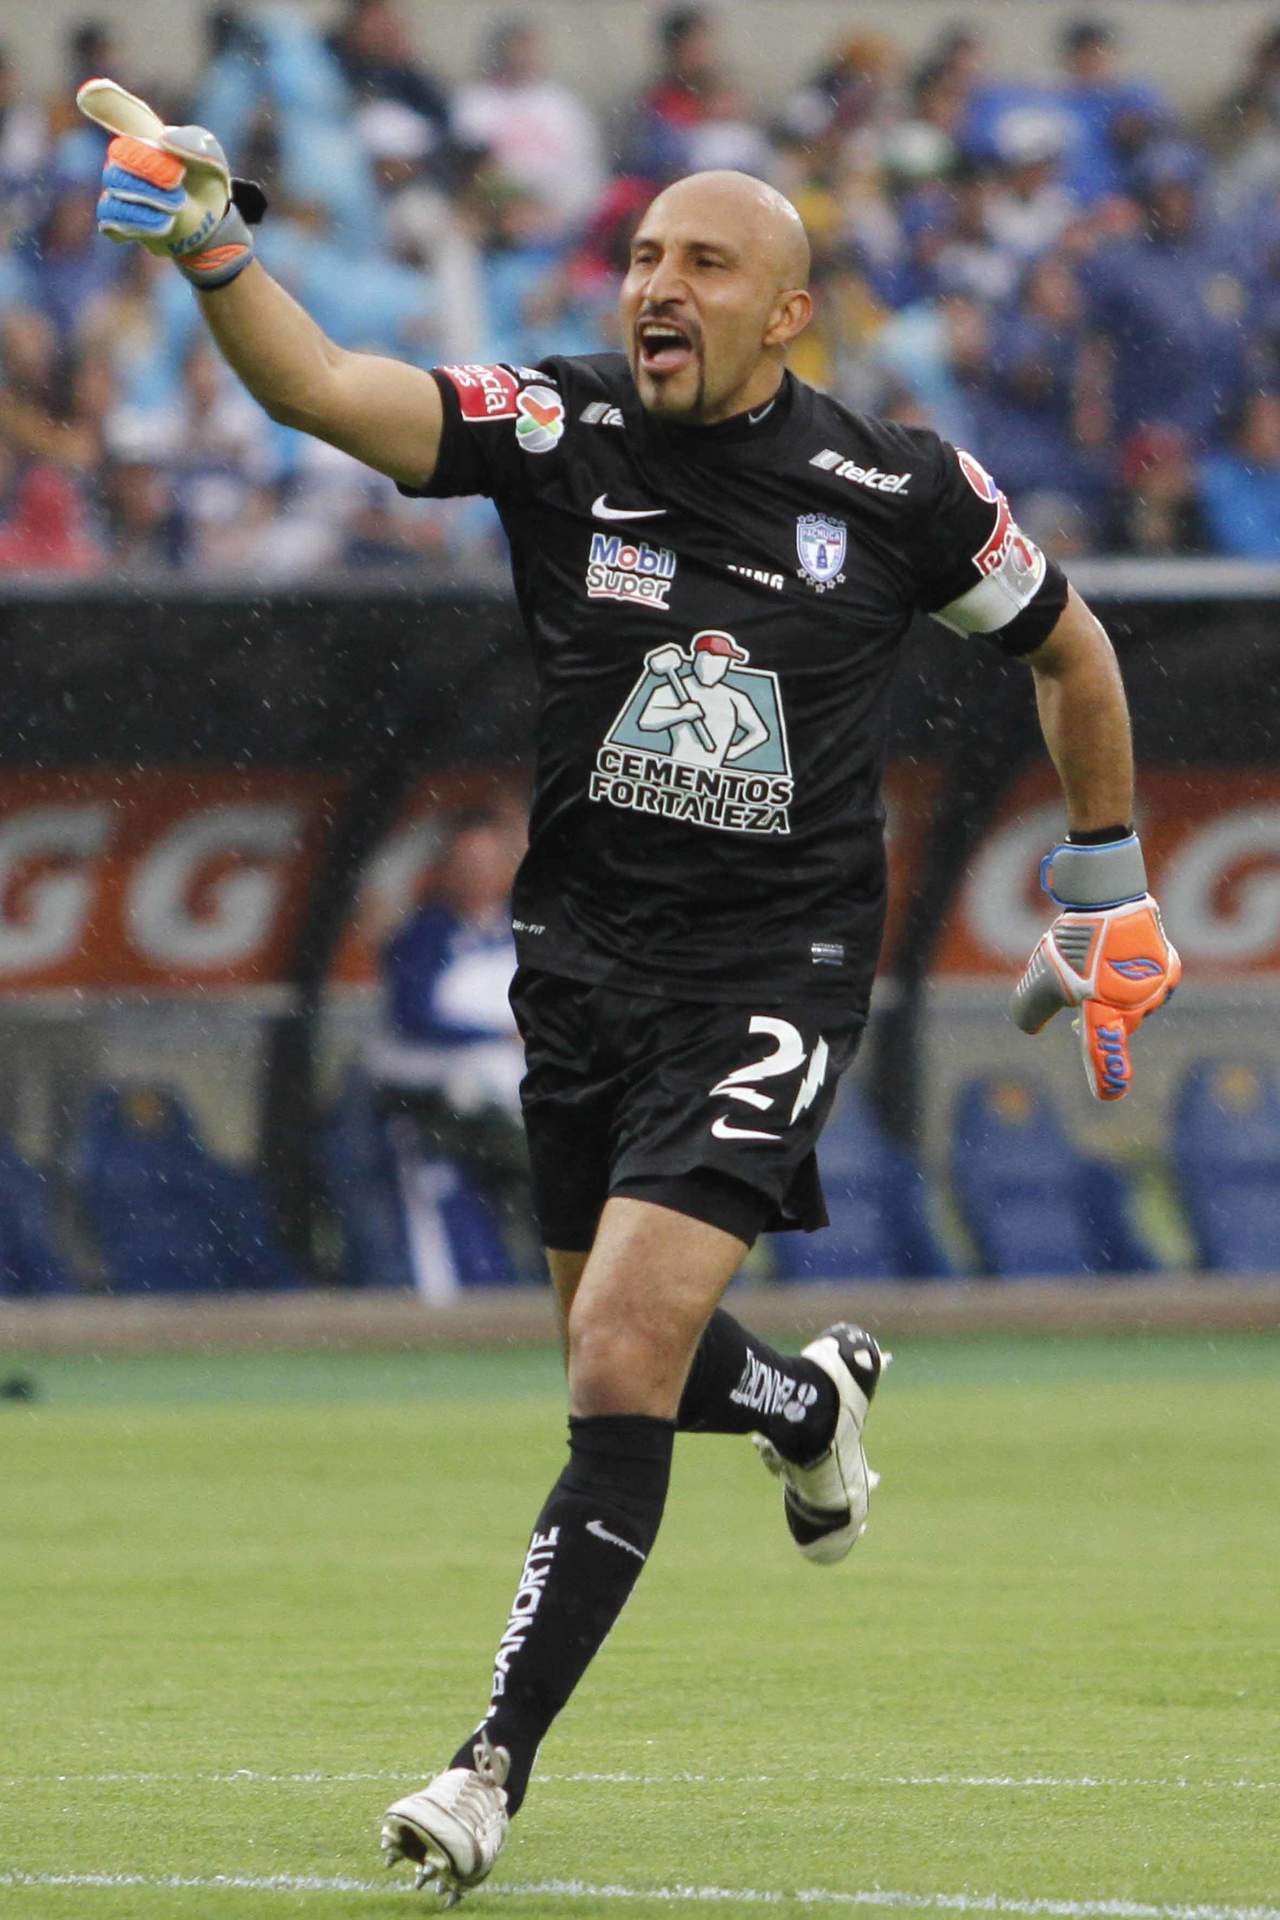 En estos años ha jugado para los equipos Cruz Azul (1993-2008), Tigres (2008-2009) Chiapas (2009-2010), Necaxa (2010-2011) San Luis (2011-2013) y Pachuca (2013-actualidad). (ARCHIVO)